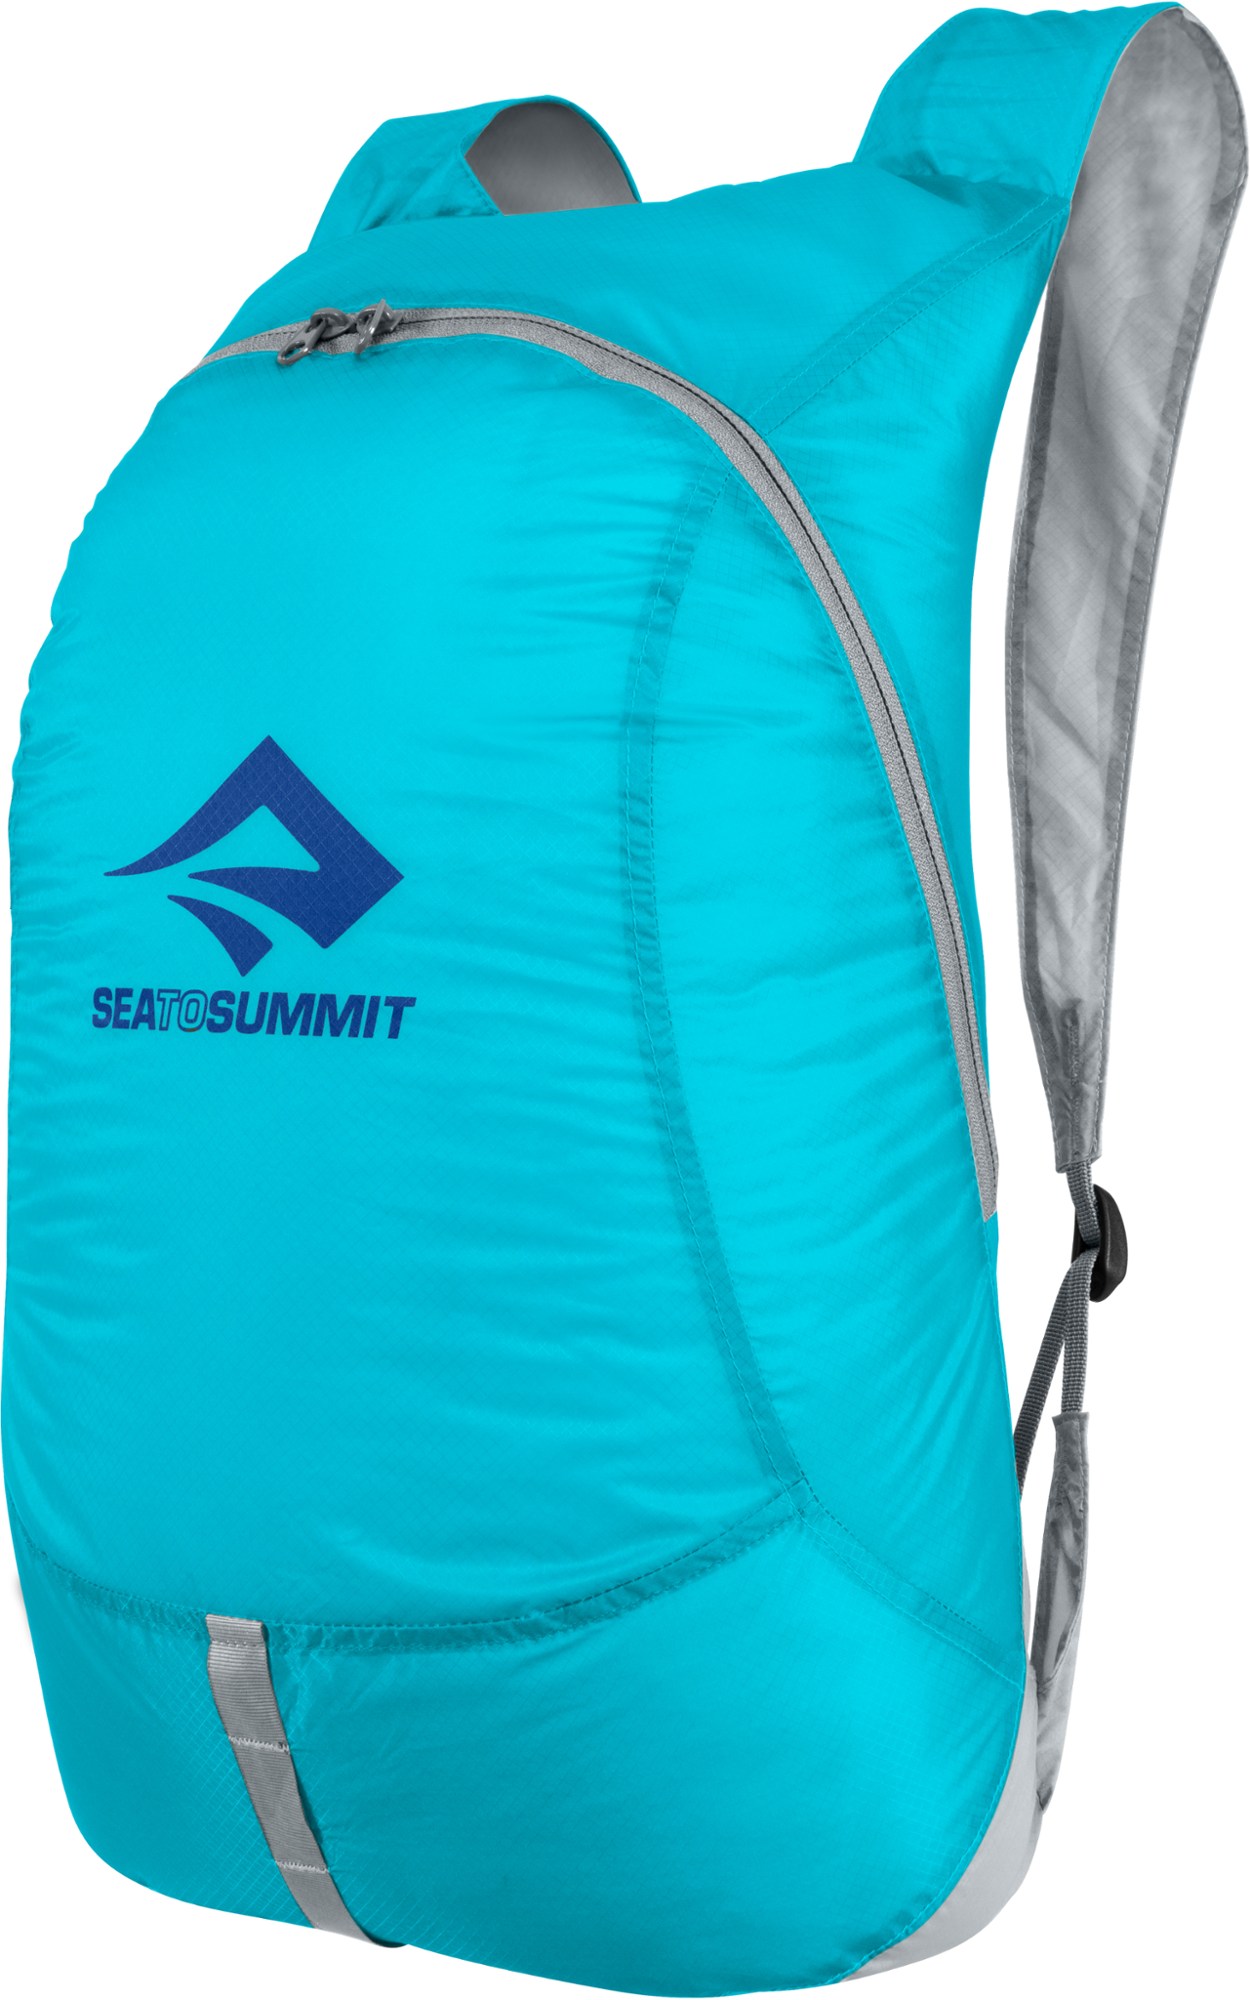 Дневной пакет Ultra-Sil Travel Sea to Summit, синий рюкзак дорожная сумка сверхлегкая складная альпинистская сумка для мужчин уличный дорожный спортивный рюкзак для бега рюкзак органайзе